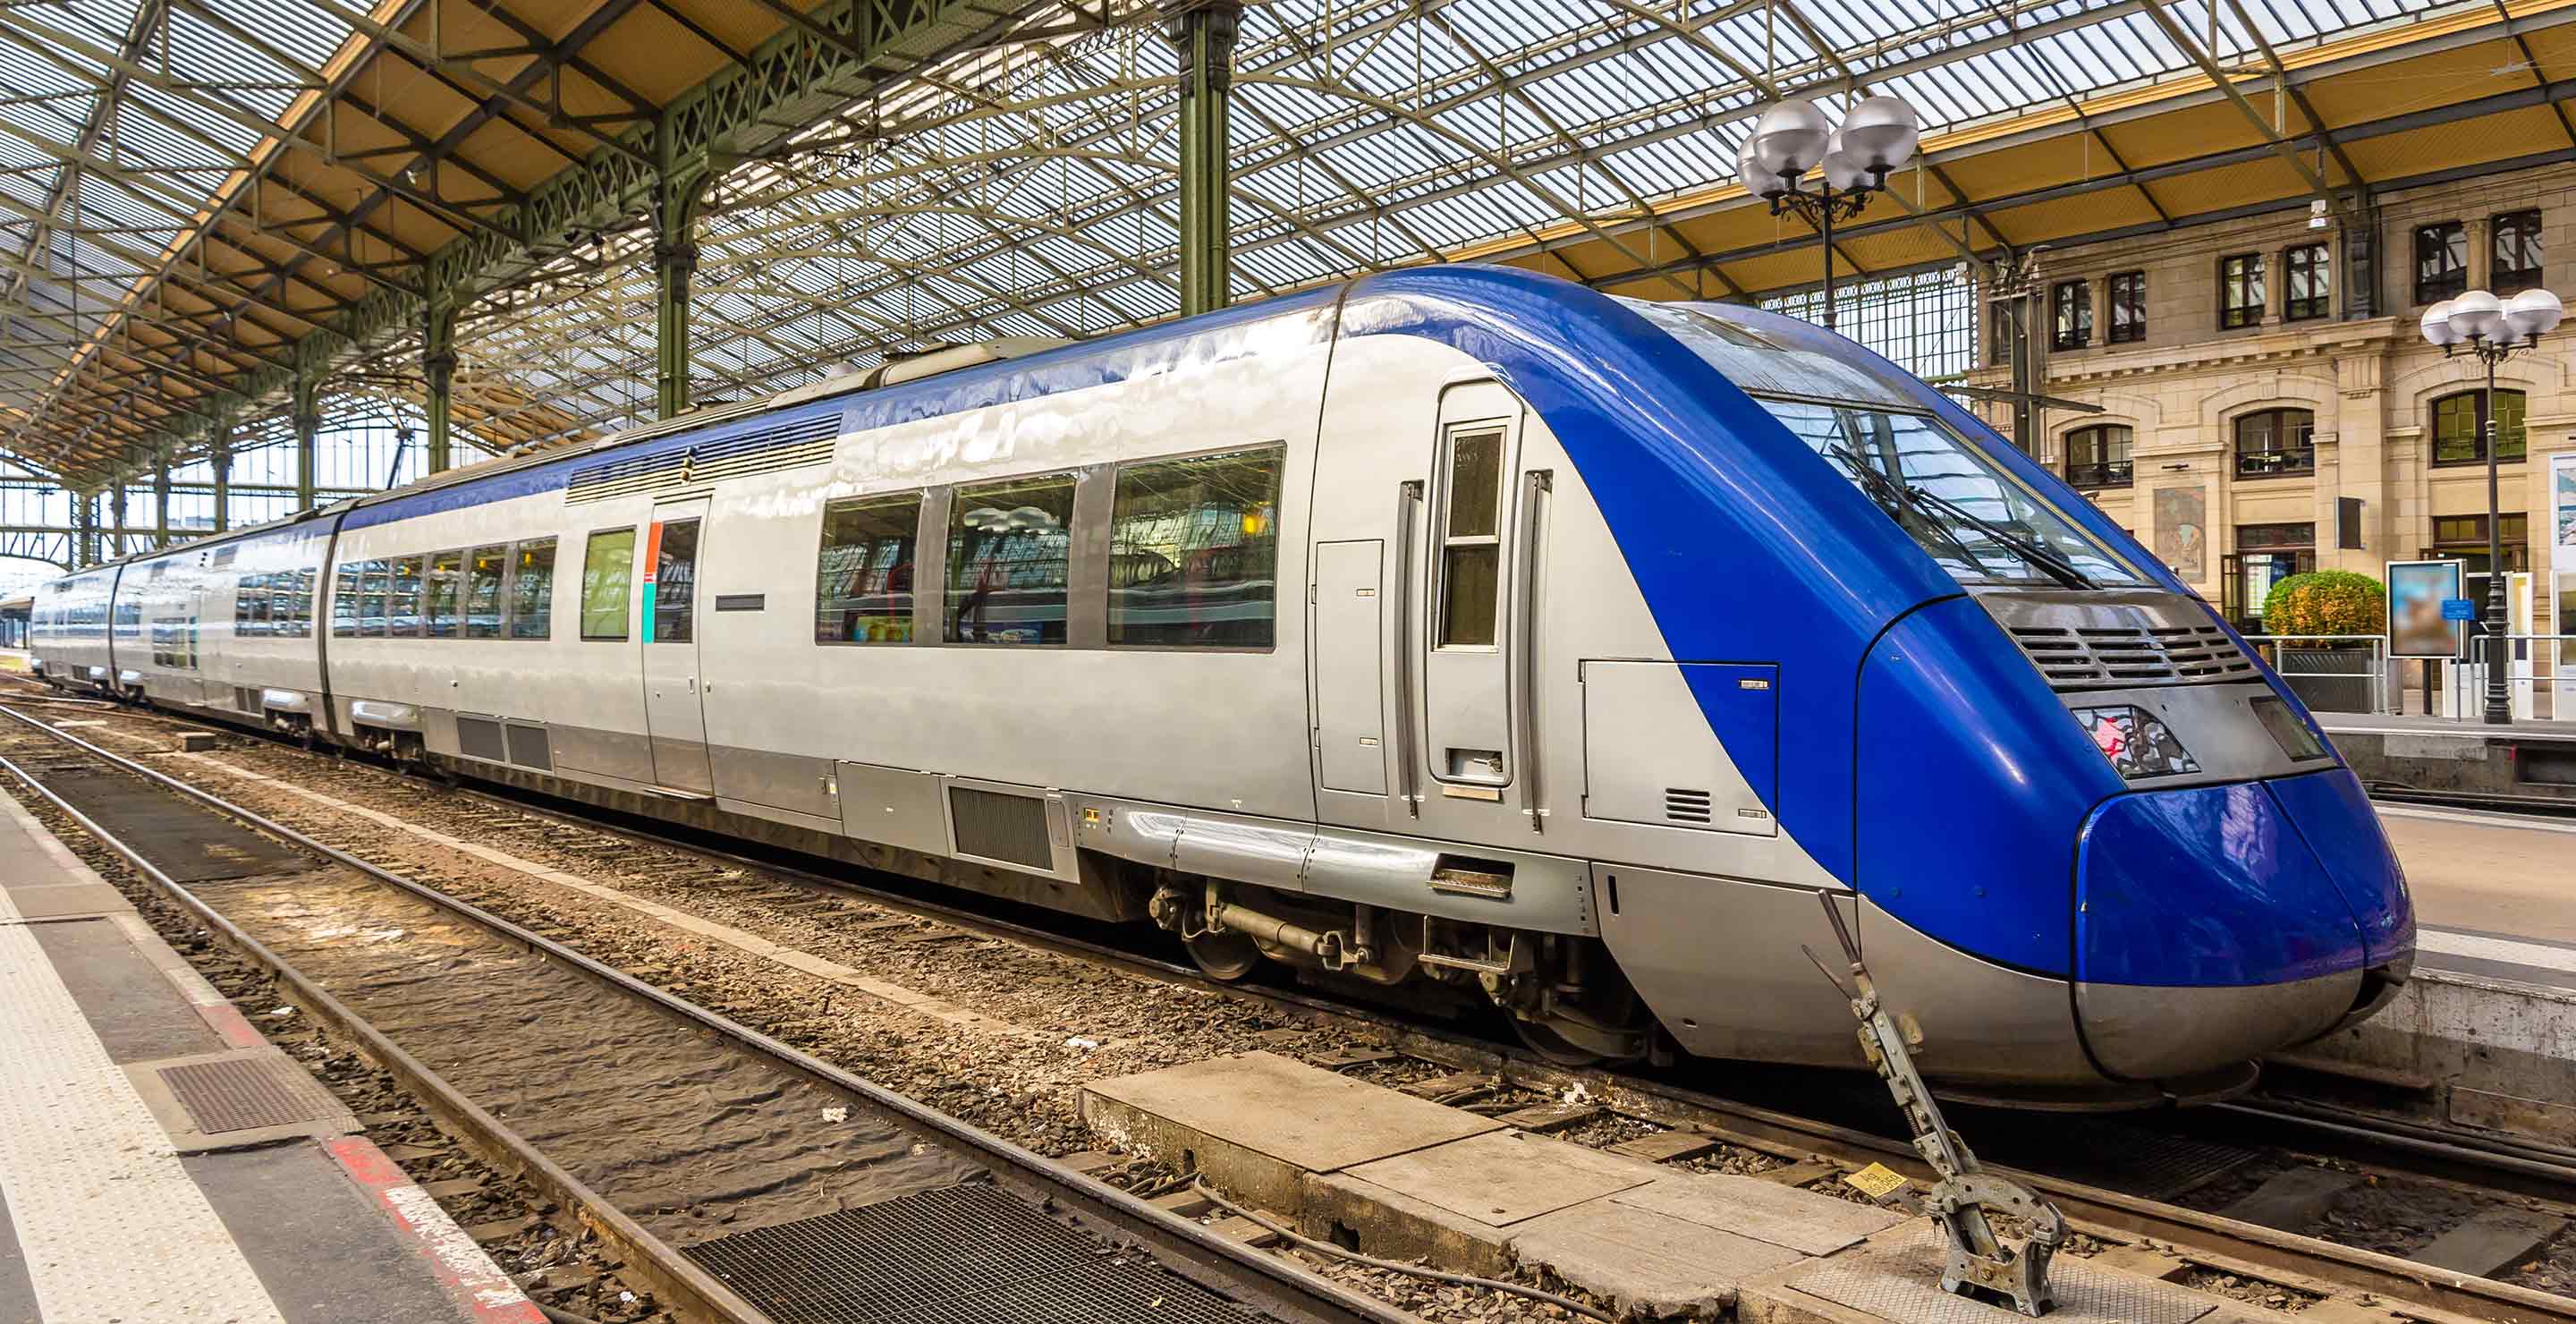 TER SNCF | Acquista treno regionale costa azzurra TER Paca | Trainline